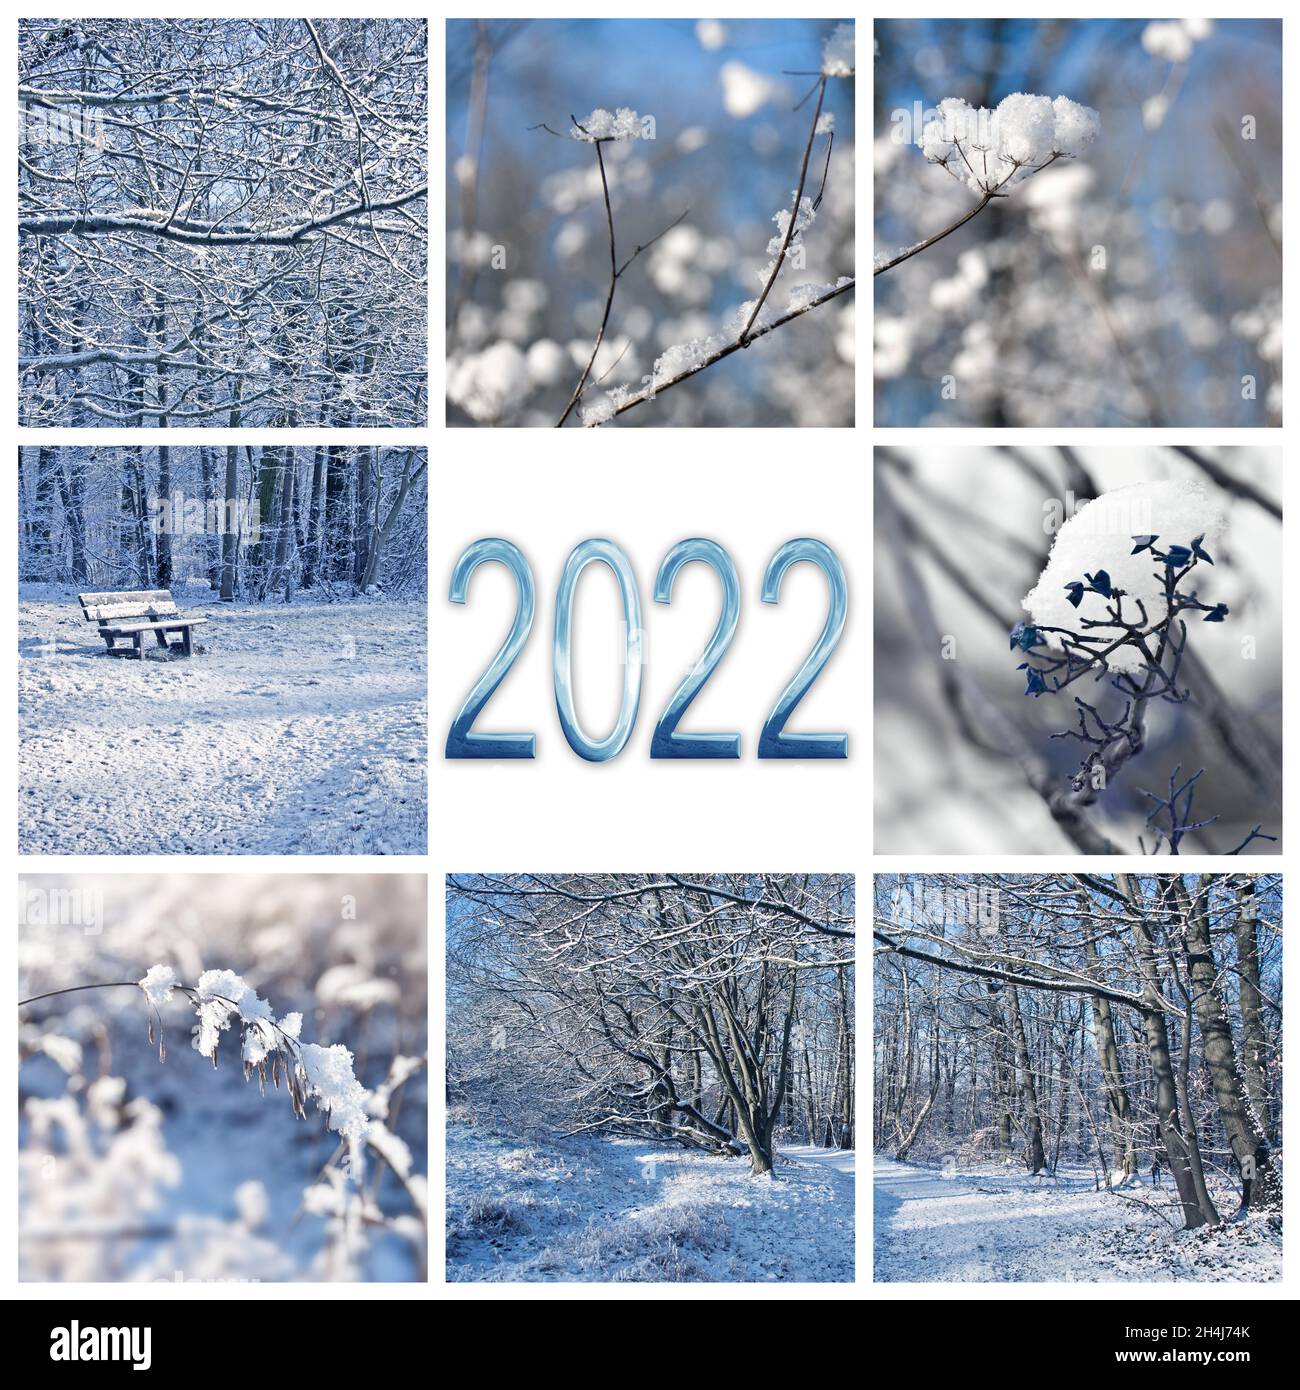 2022, neige et paysages d'hiver, carte de vœux du nouvel an carré Banque D'Images